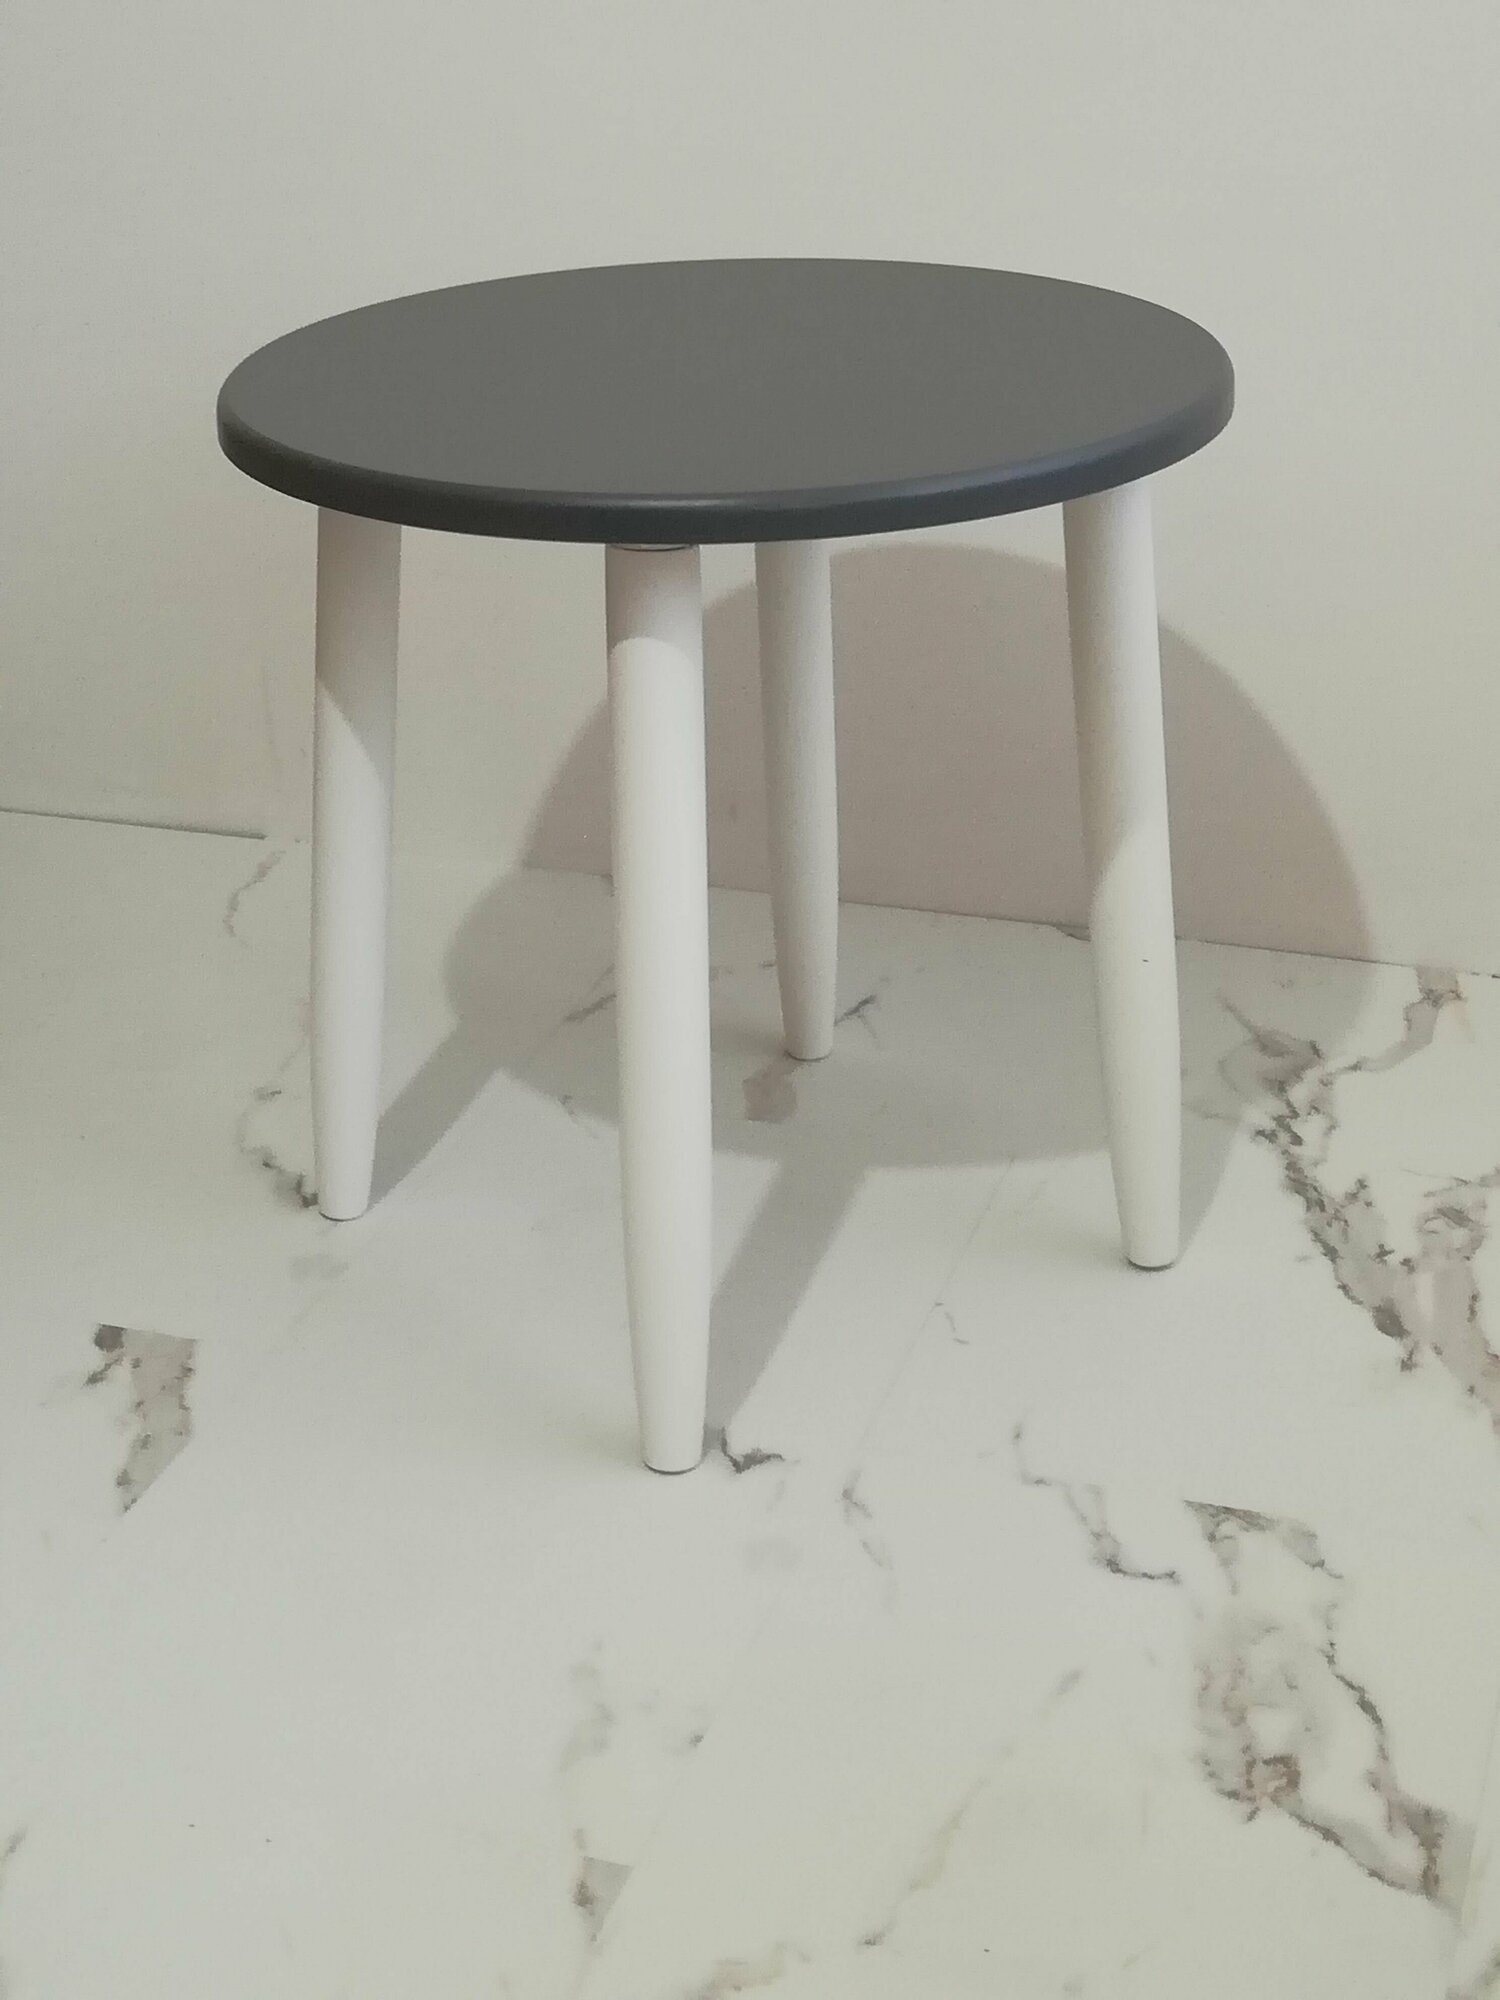 Столик, журнальный стол, кофейный столик, прикроватный, детский, круглый. Диаметр 47 см. Цвет: серый графит, белые крашенные ножки из березы.